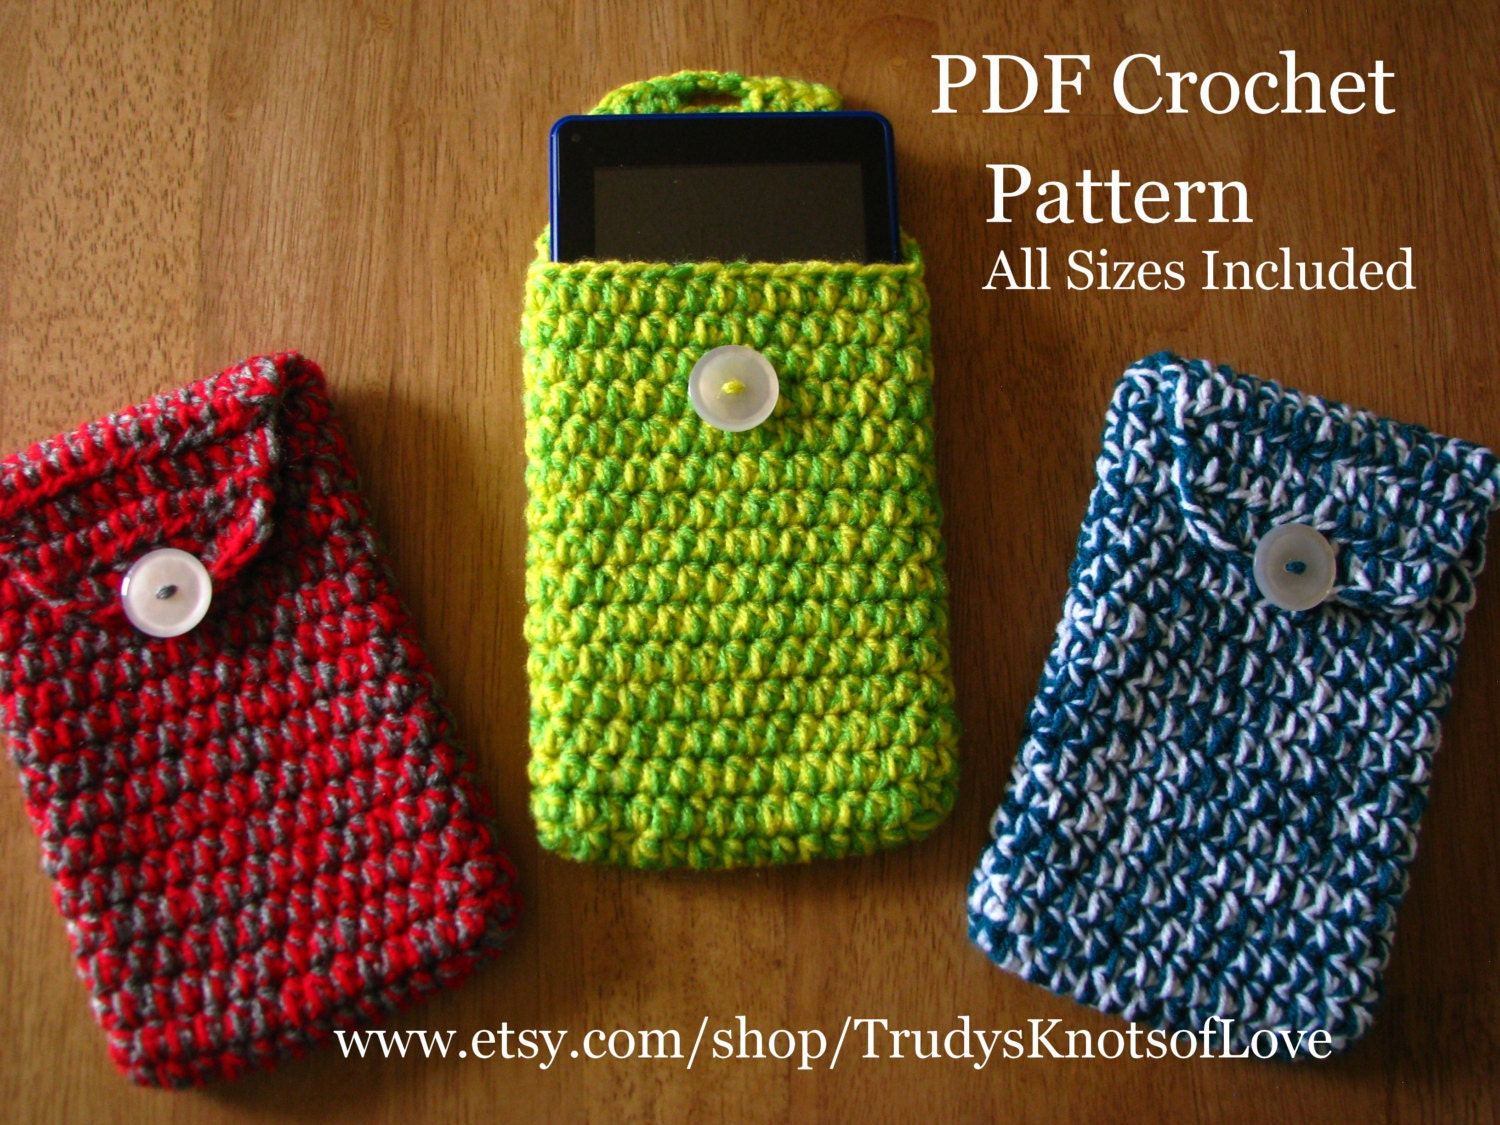 Crochet Tablet Cover PatternCrochet Tablet CoverPDF Crochet